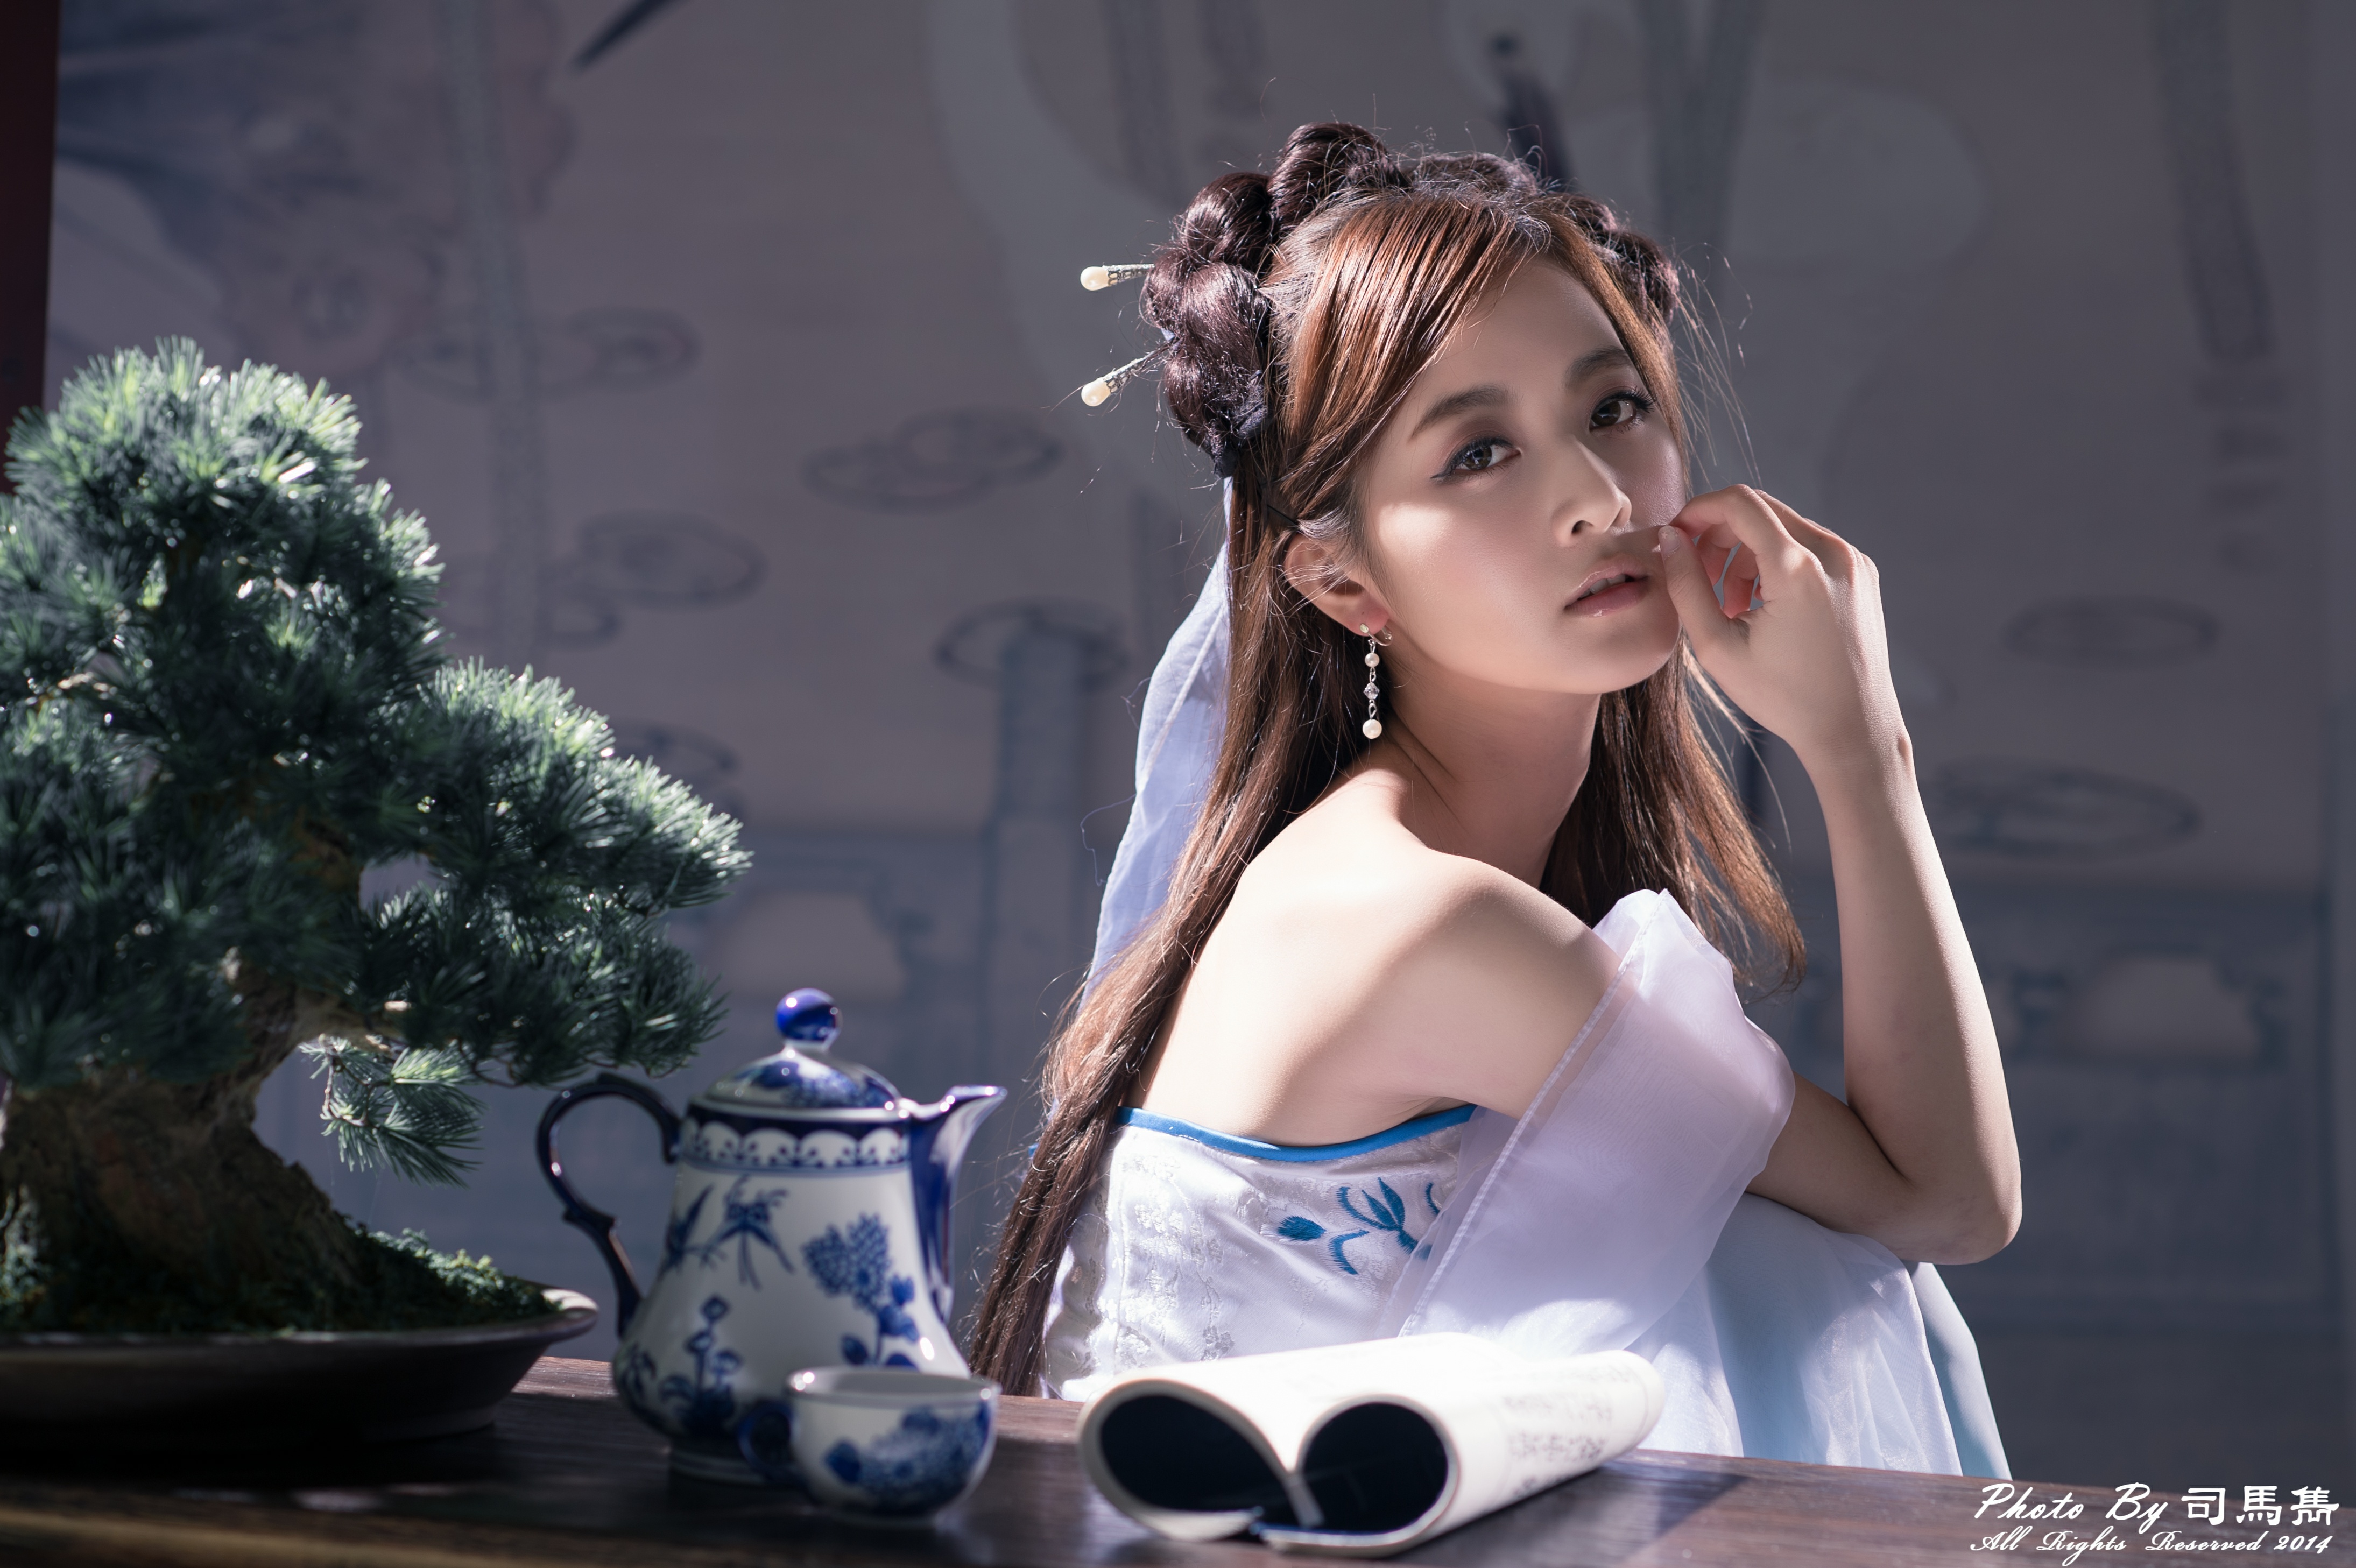 Asian Bonsai Cup Hair Dress Hairpin Mikako Zhang Kaijie Taiwanese Tea Set 4378x2914